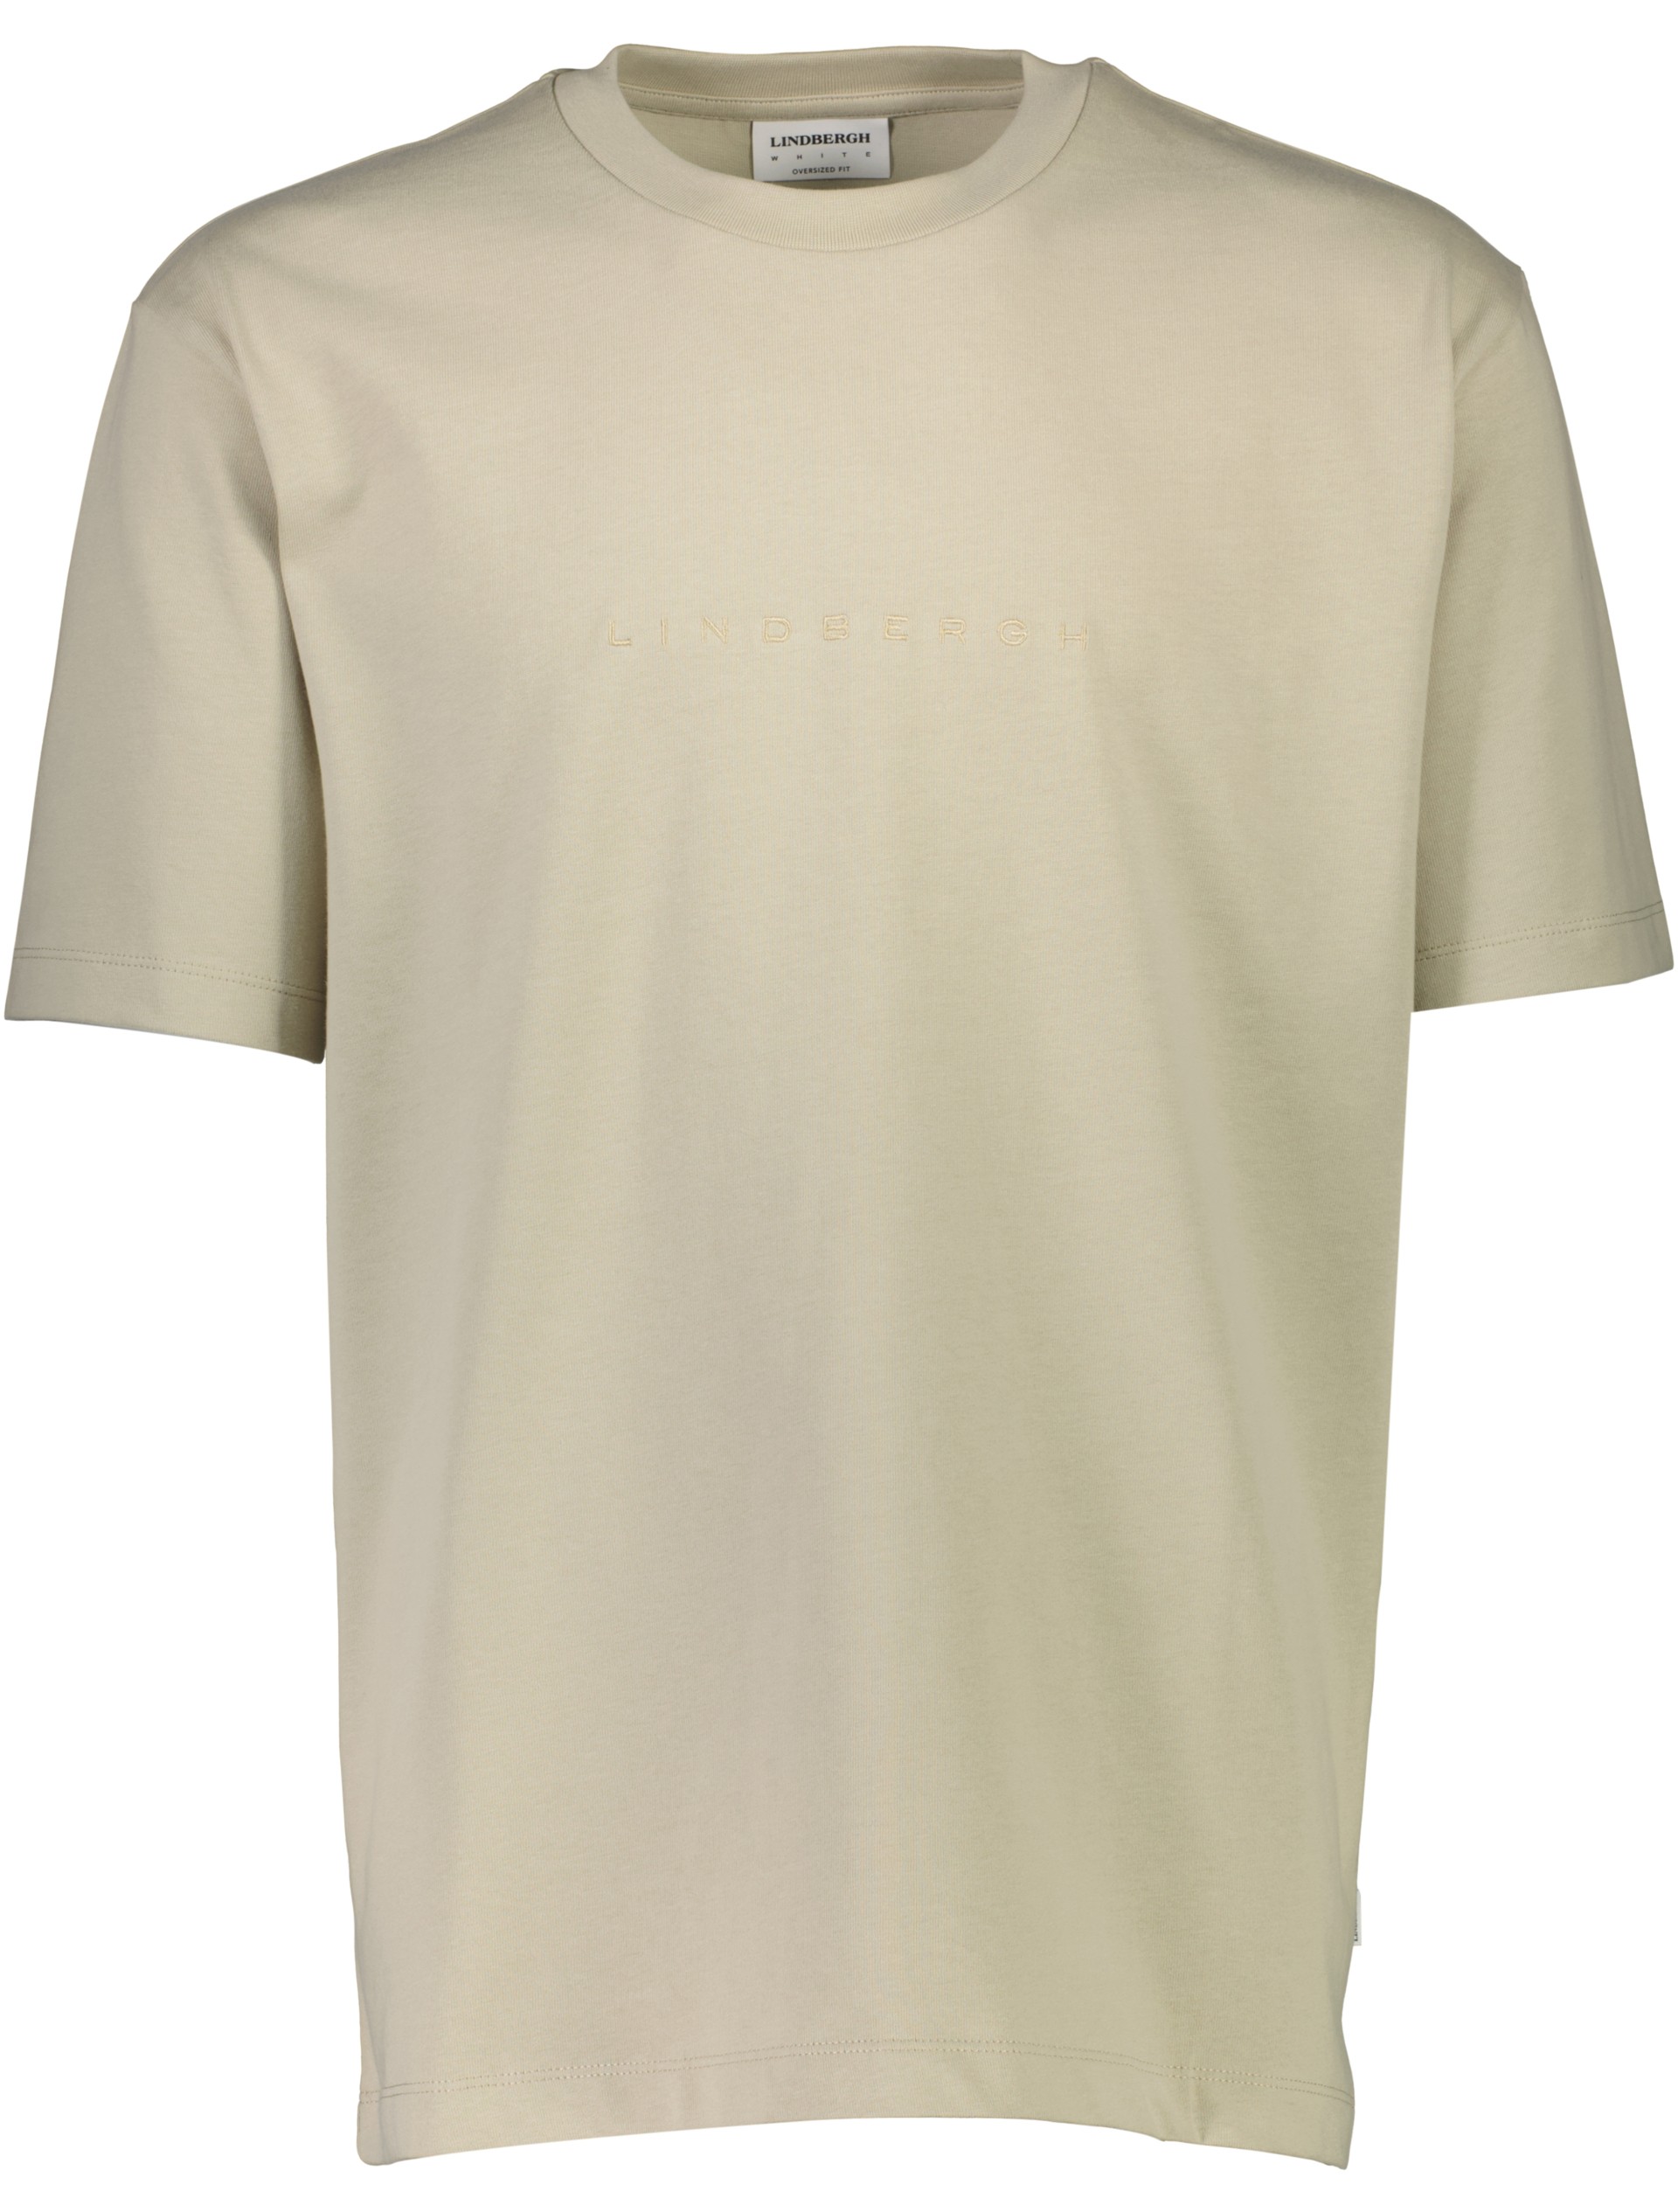 Lindbergh T-shirt grün / pale army